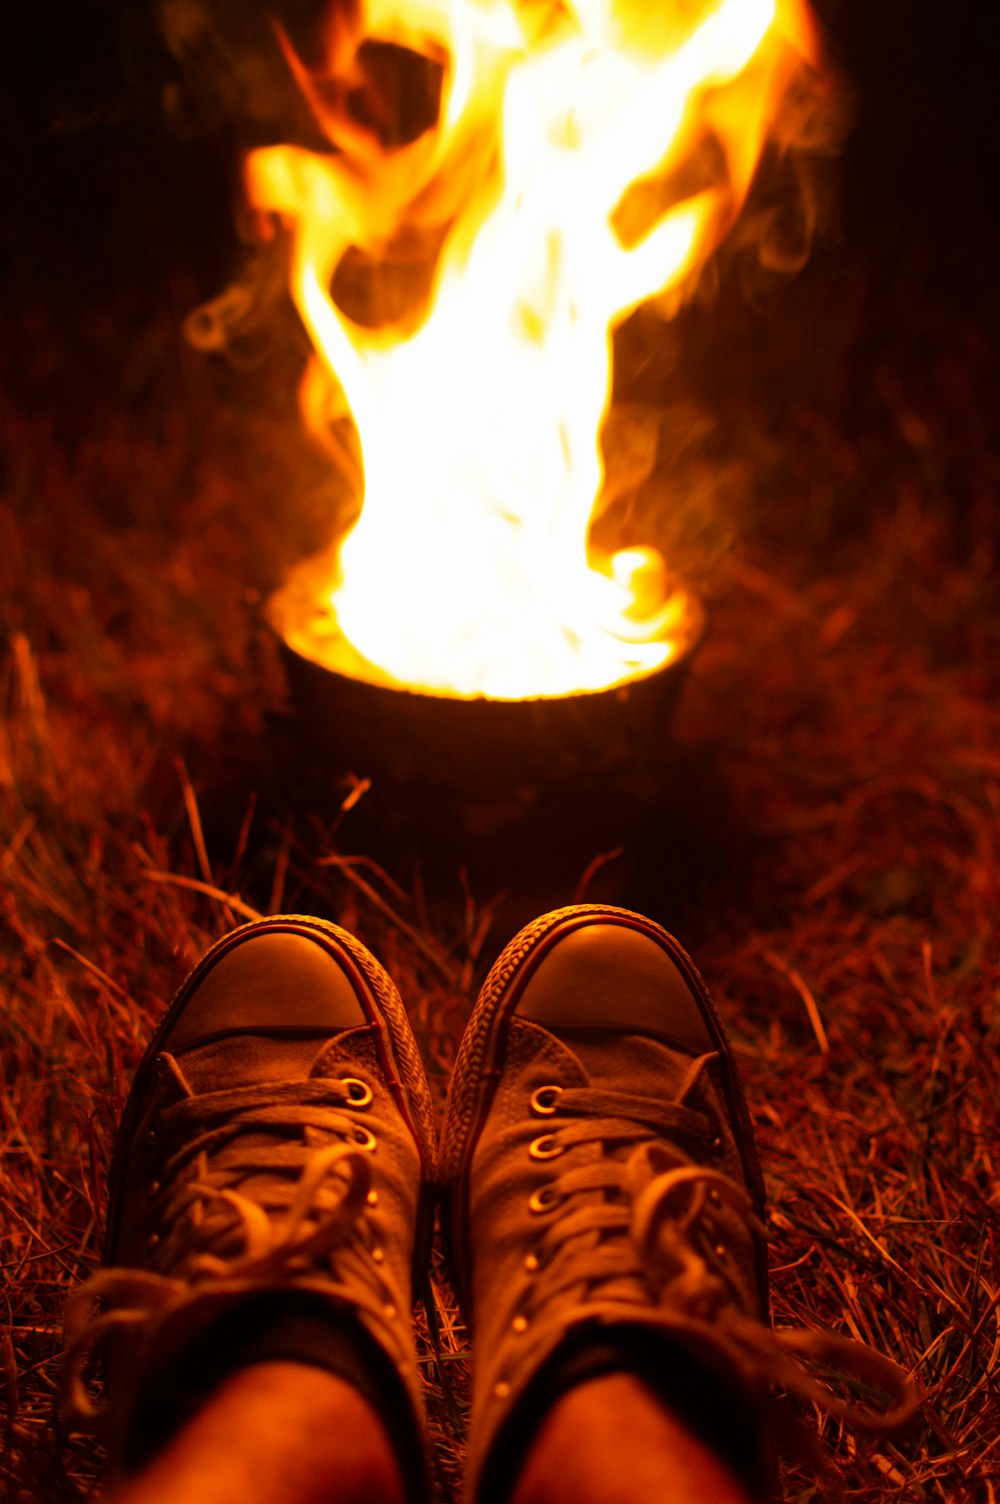 person wearing sneakers near fire in pot